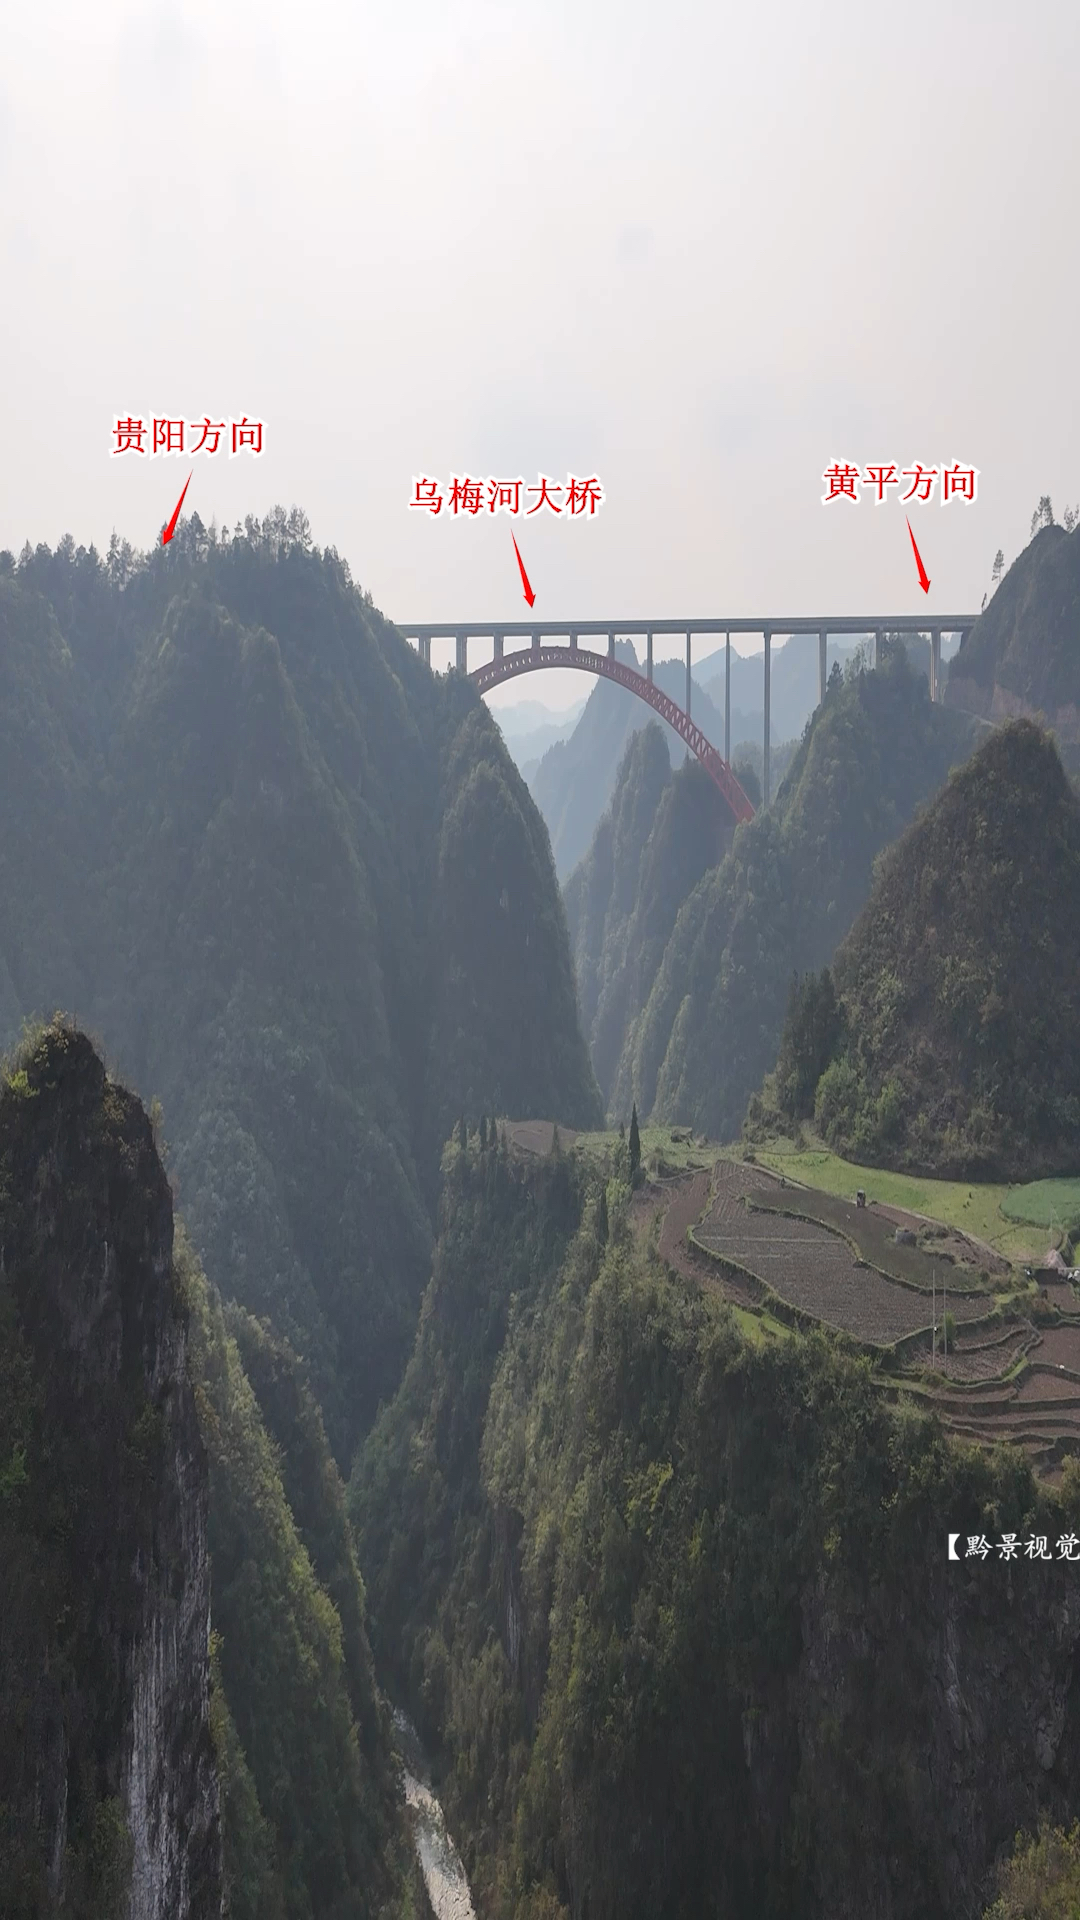 遇山开路，遇水架桥，贵州真不愧被称为桥梁博物馆！#中国桥梁 #桥见贵州 #超级工程